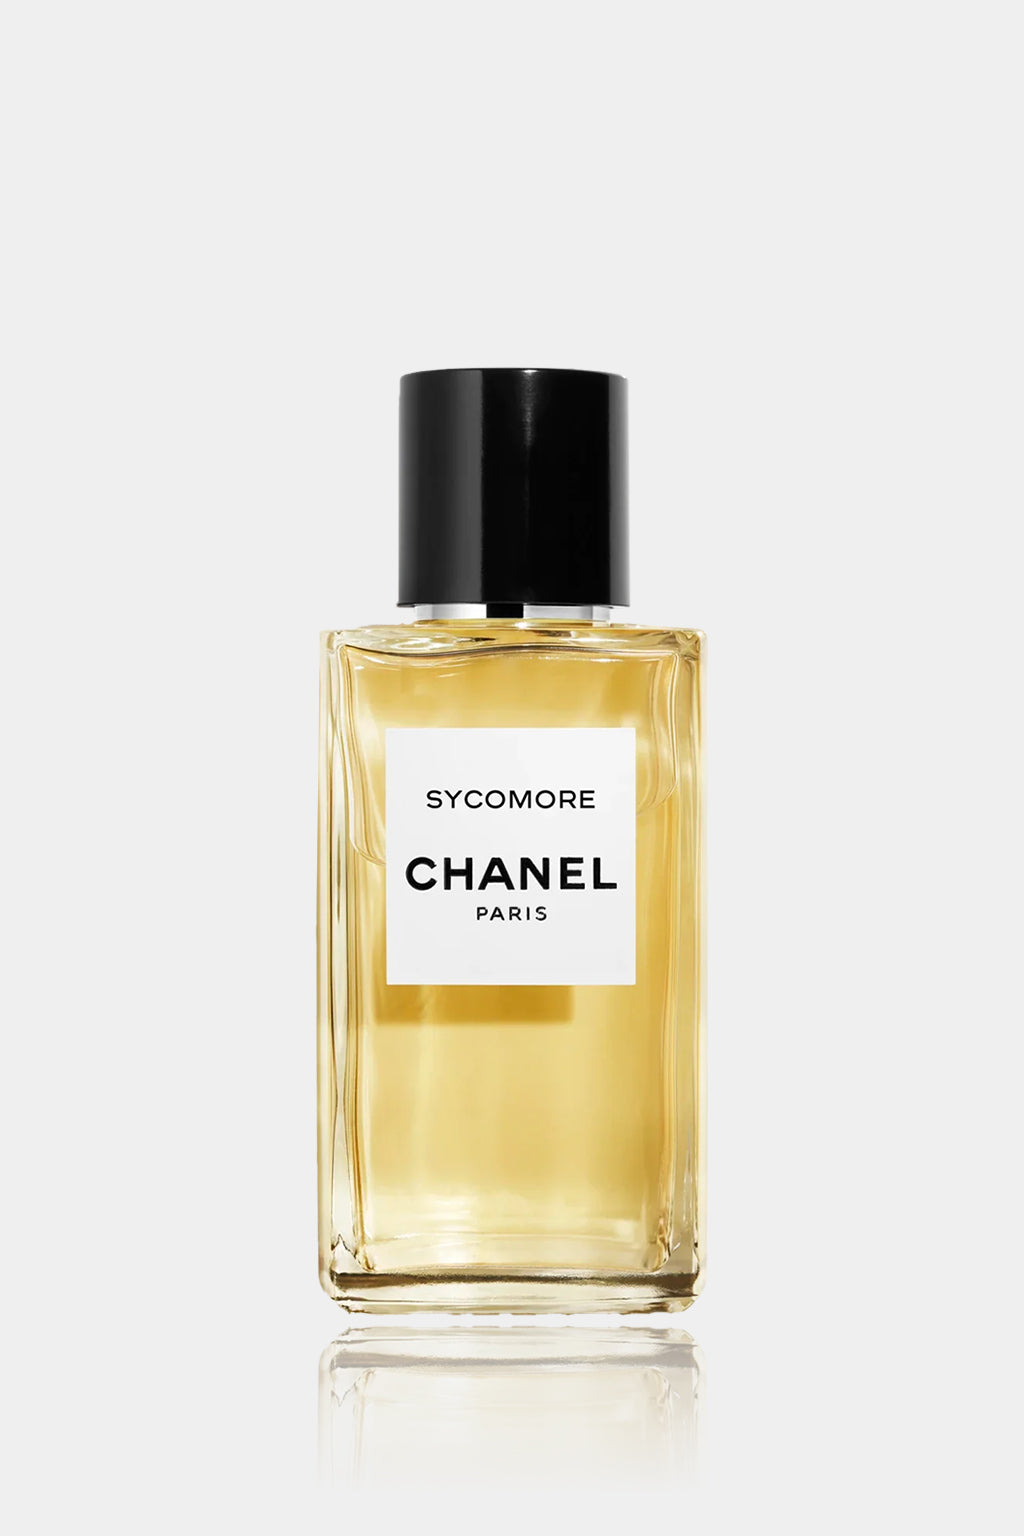 Chanel - Sycomore Eau de Parfum